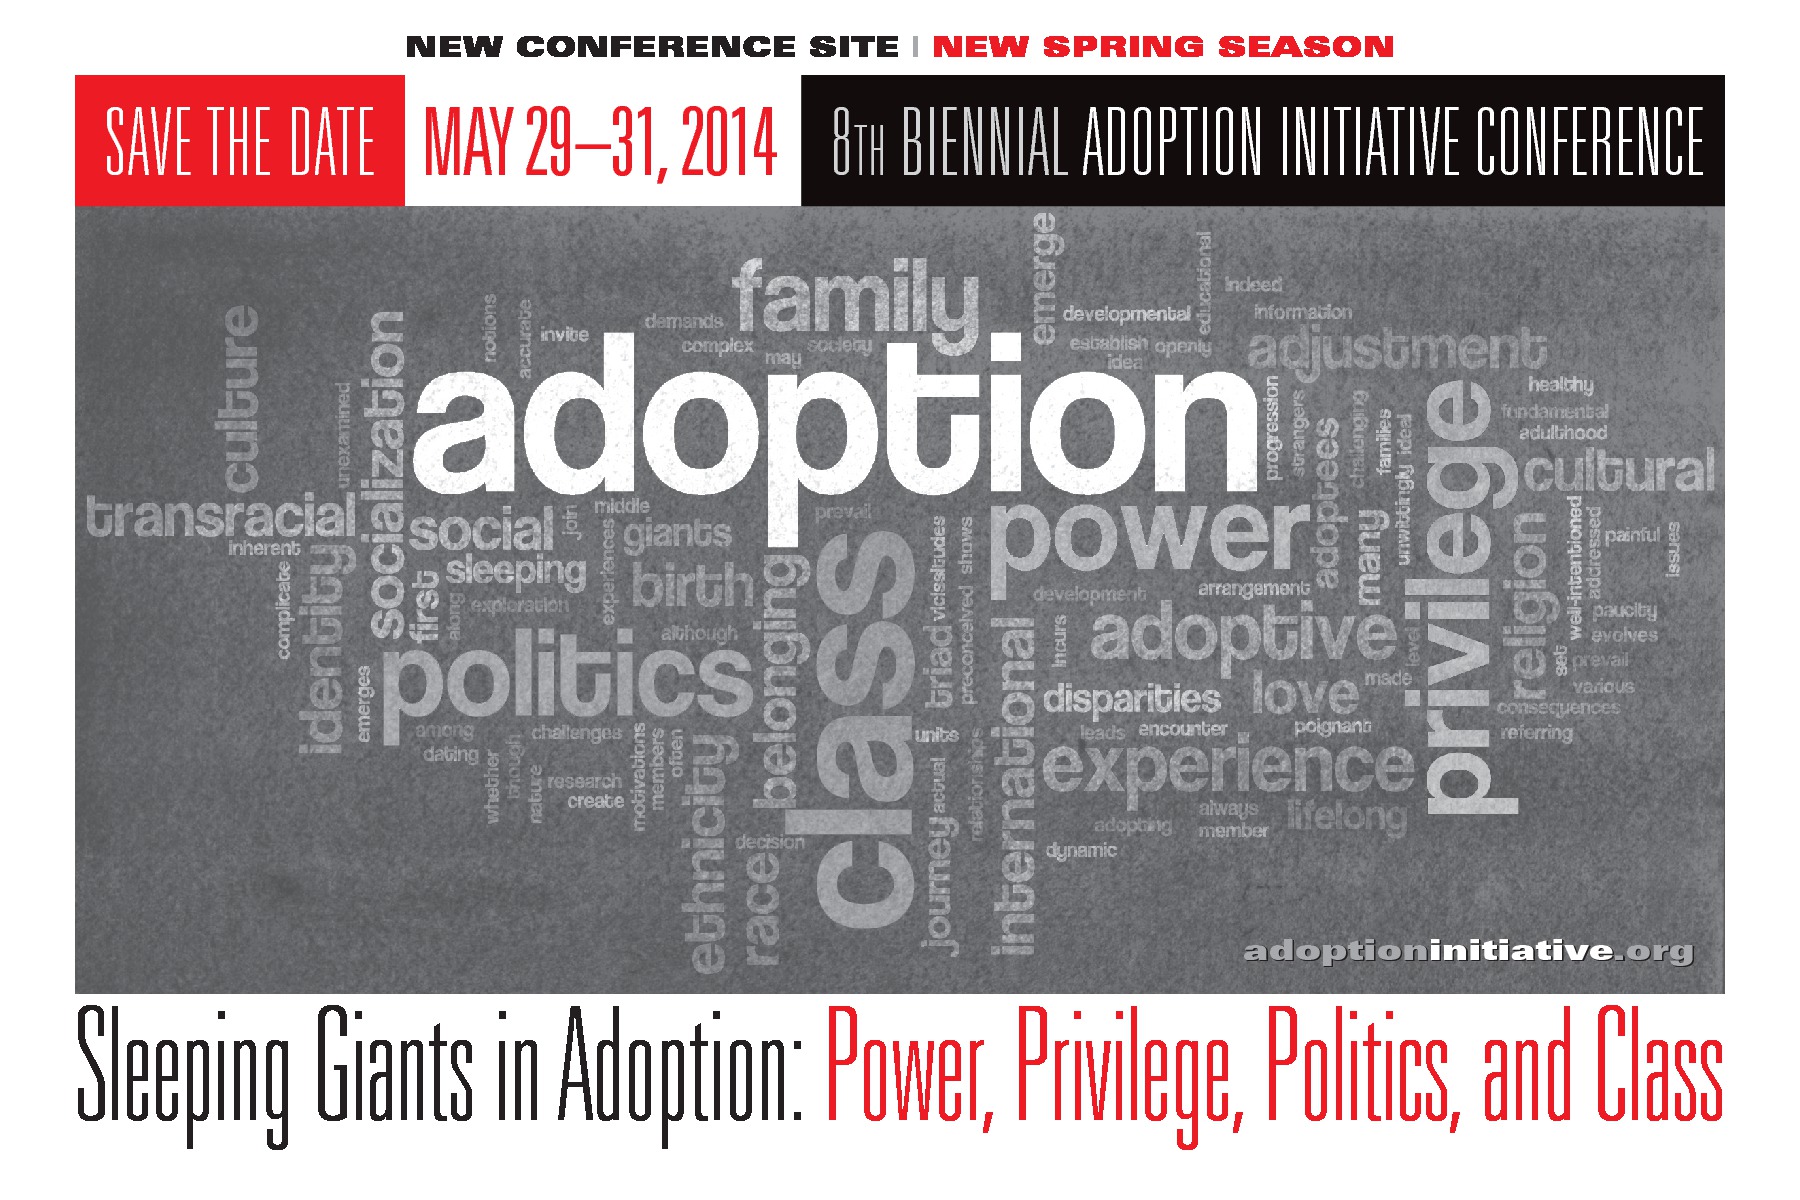 NY adoption conference